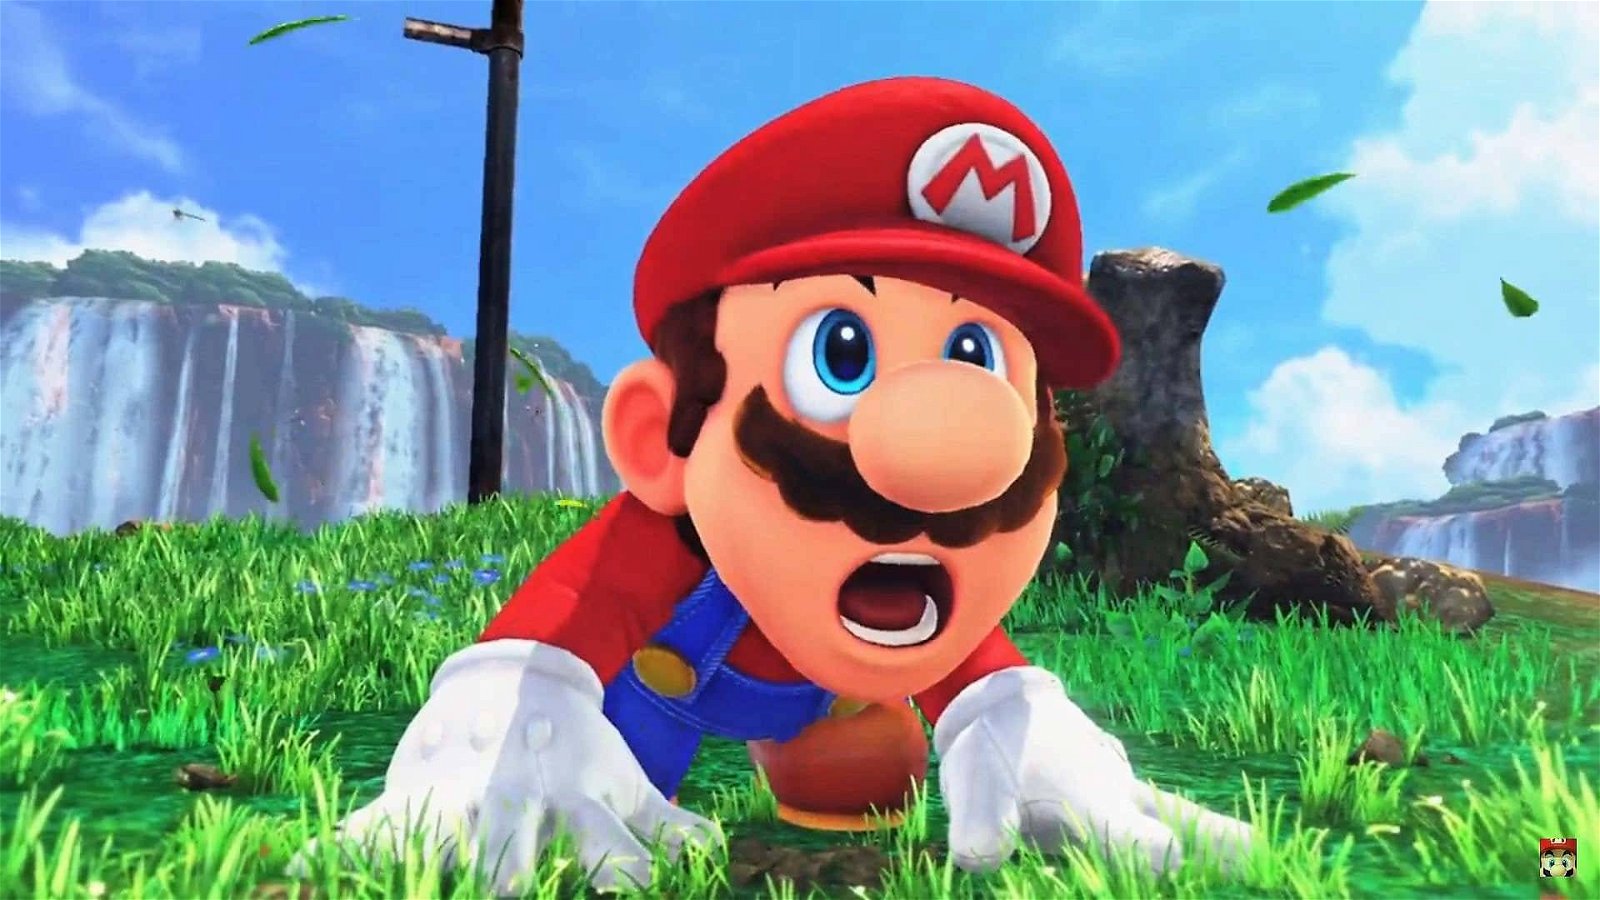 Immagine di LEGO Super Mario: Nintendo rilascia un video teaser, ecco i dettagli